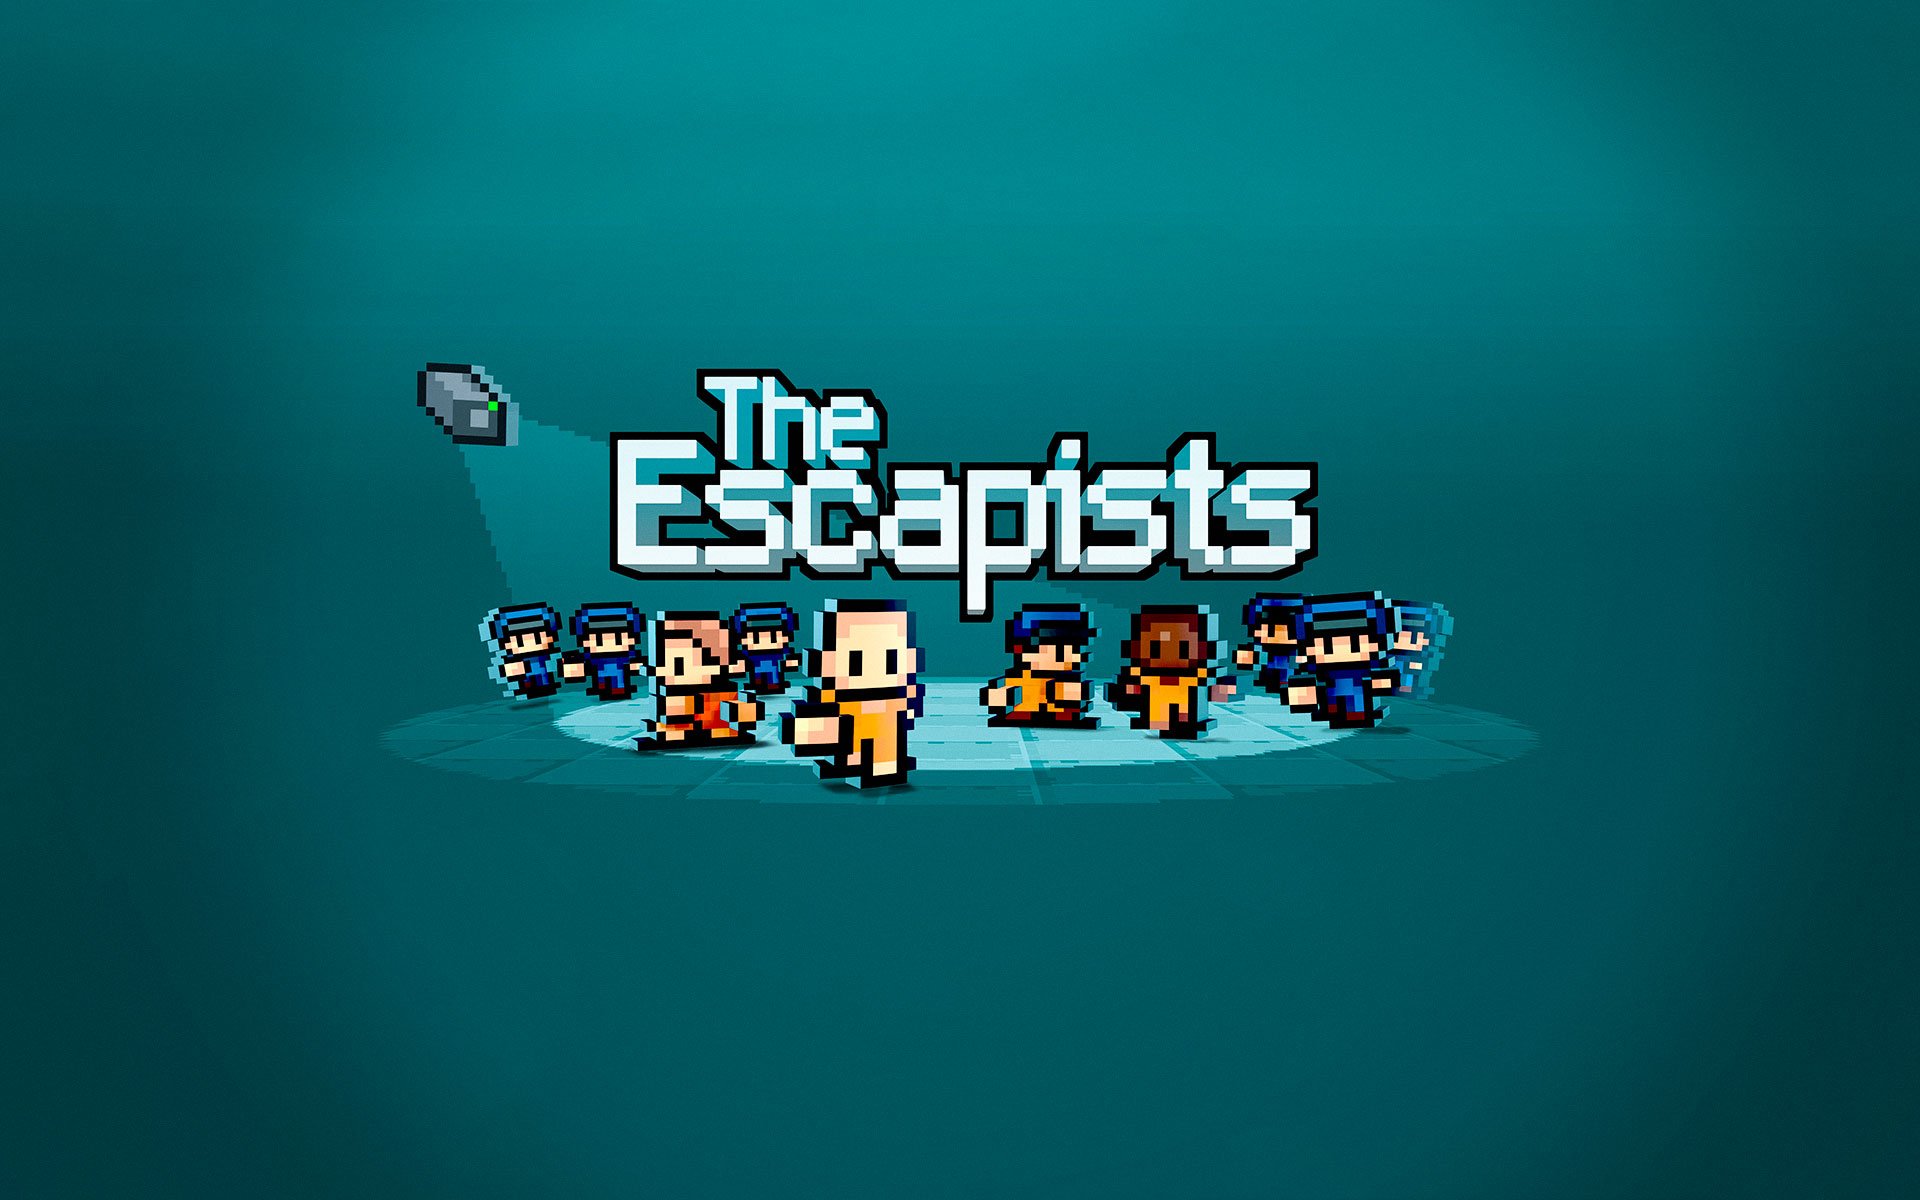 The Escapists por R$ 36.99